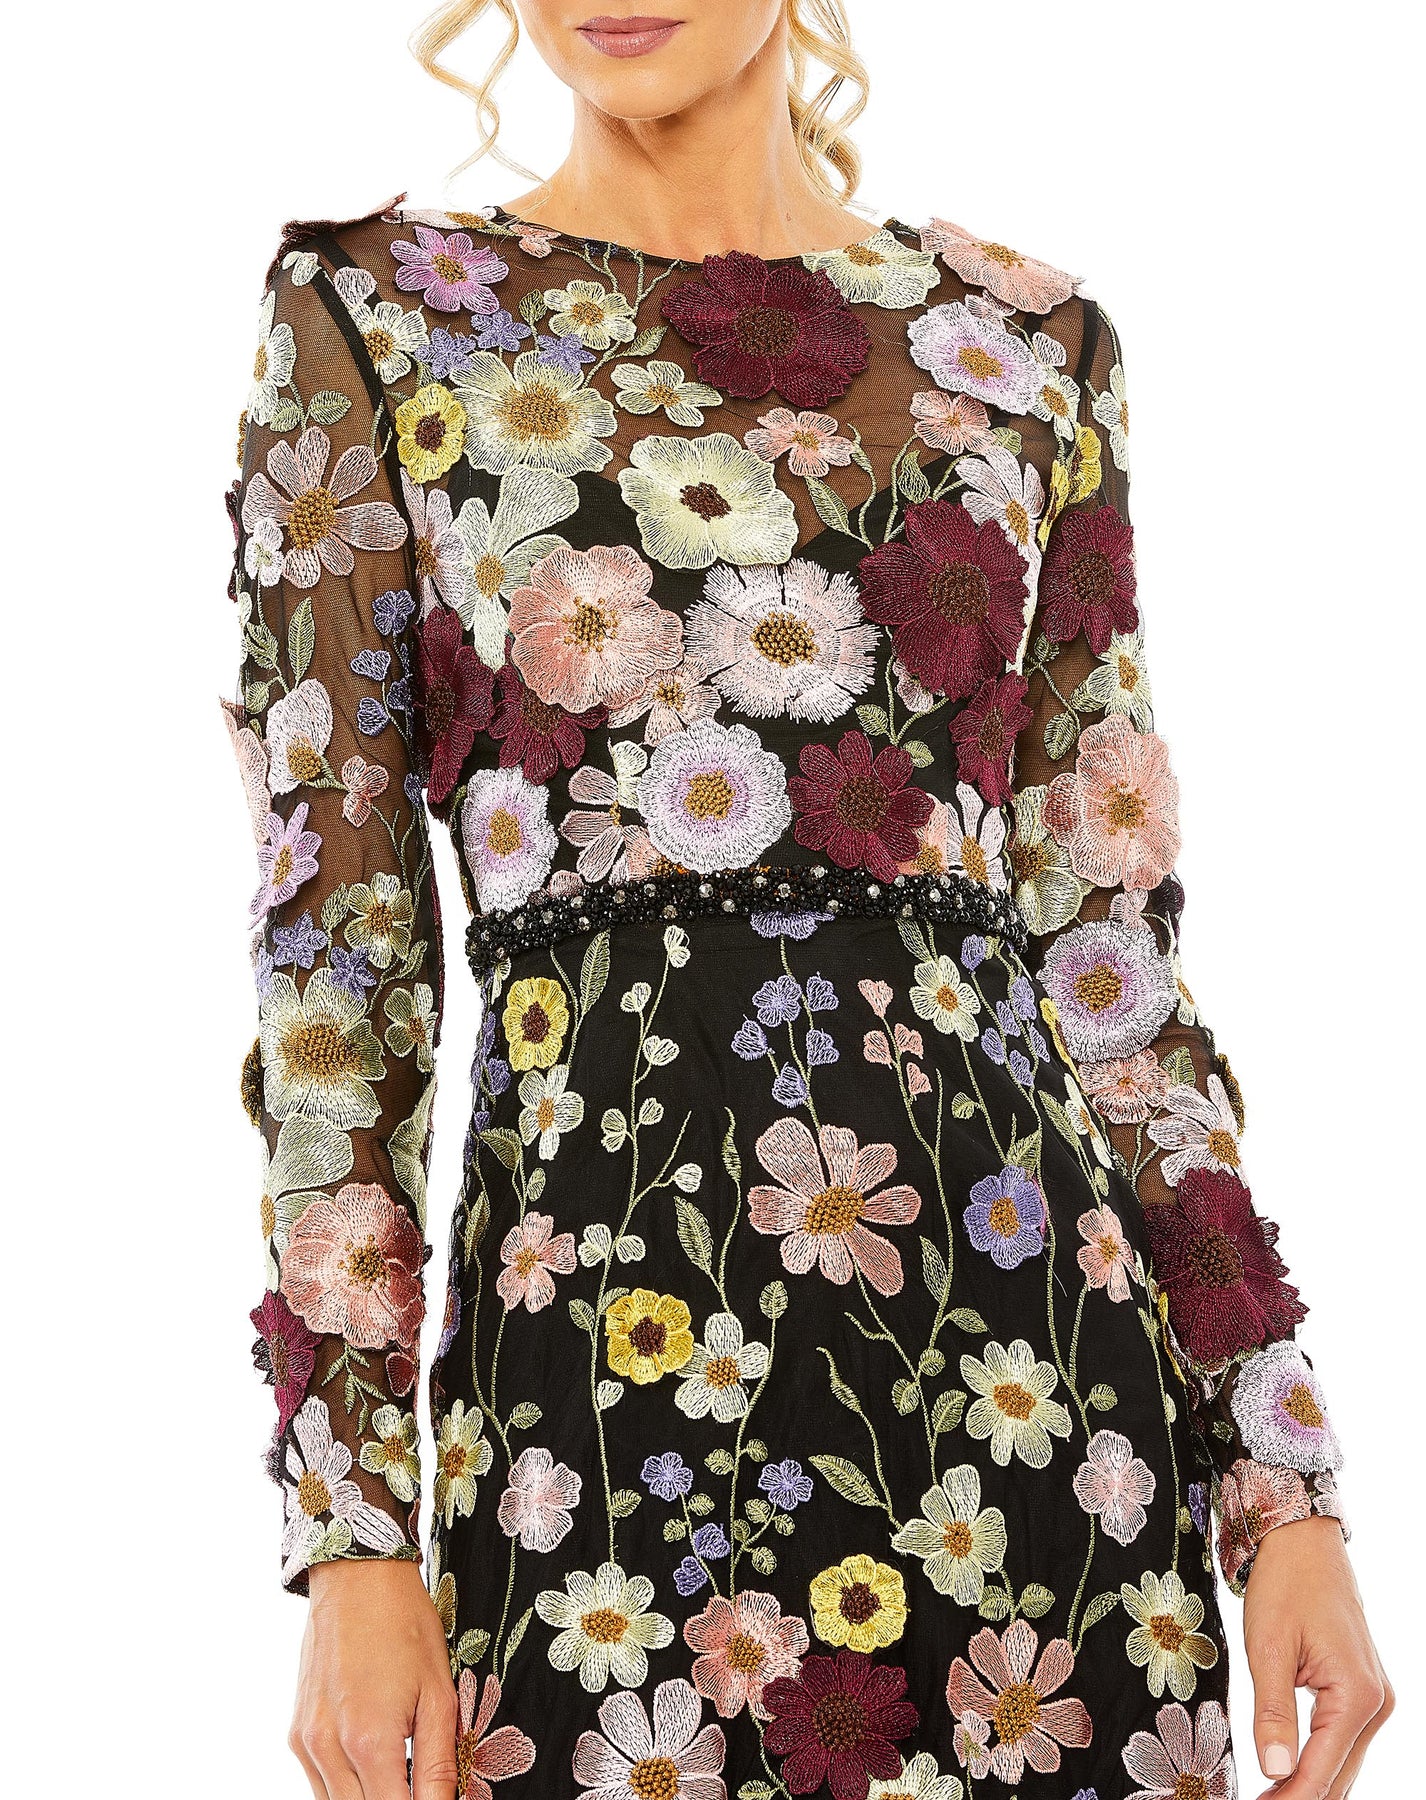 High Neck Floral Embellished A-Line Dress – Mac Duggal